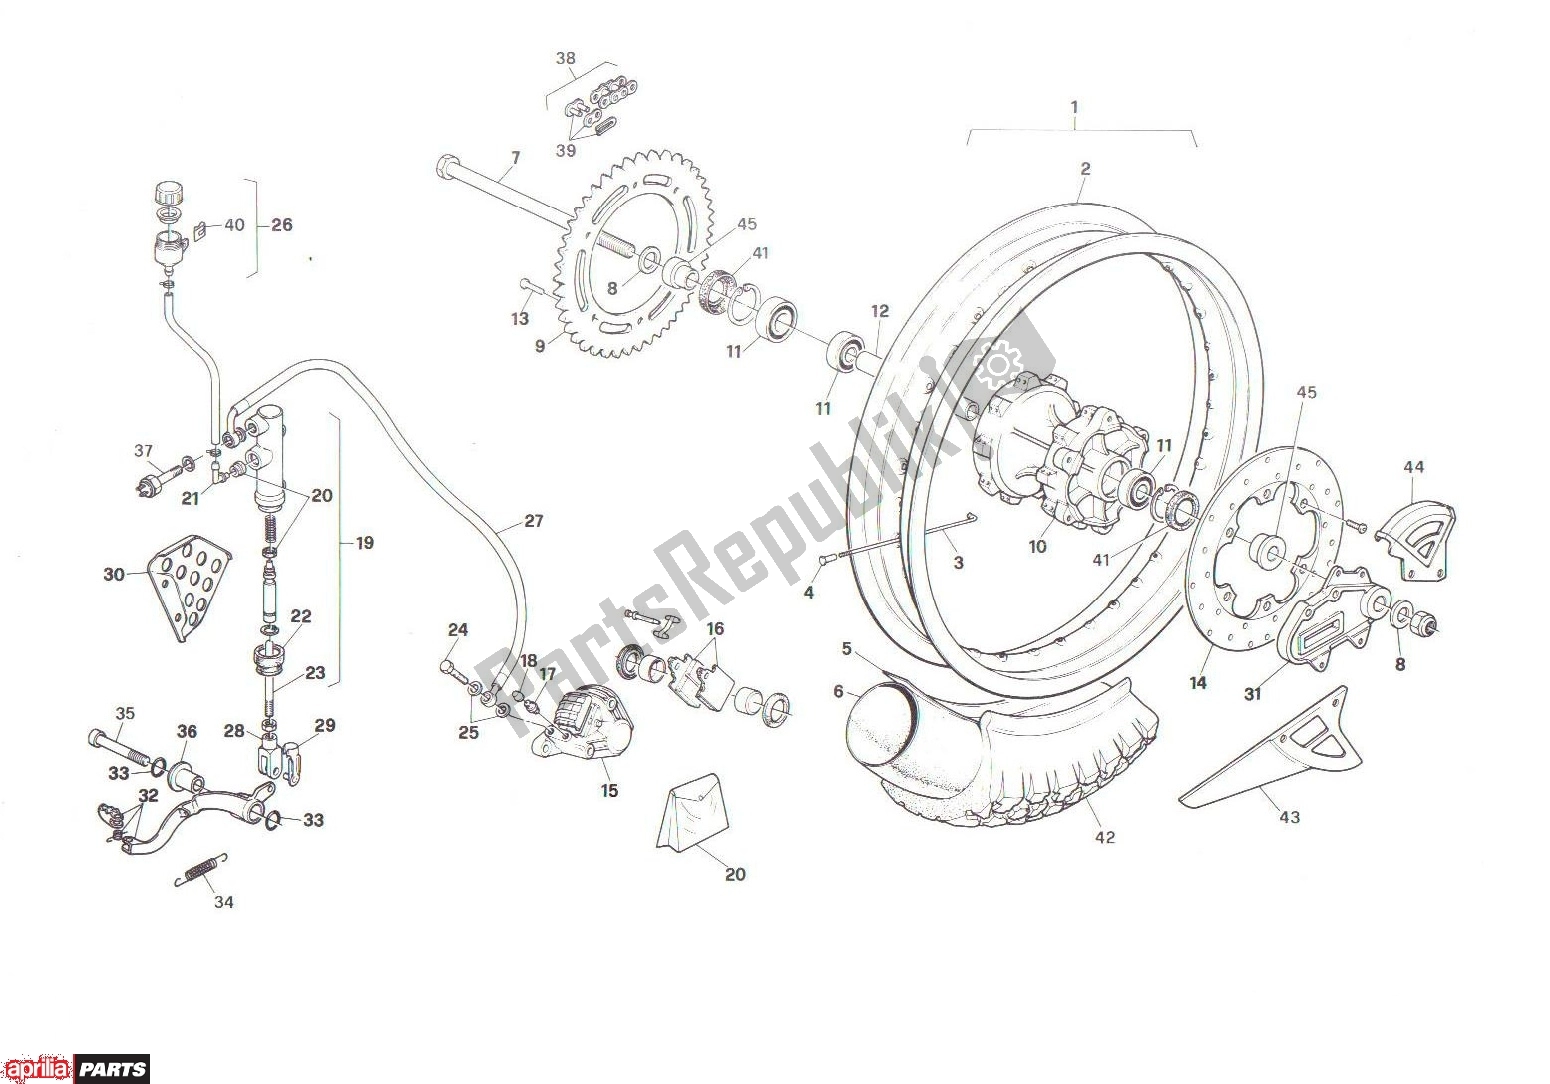 Todas las partes para Rear Wheel de Aprilia RX 101 125 1989